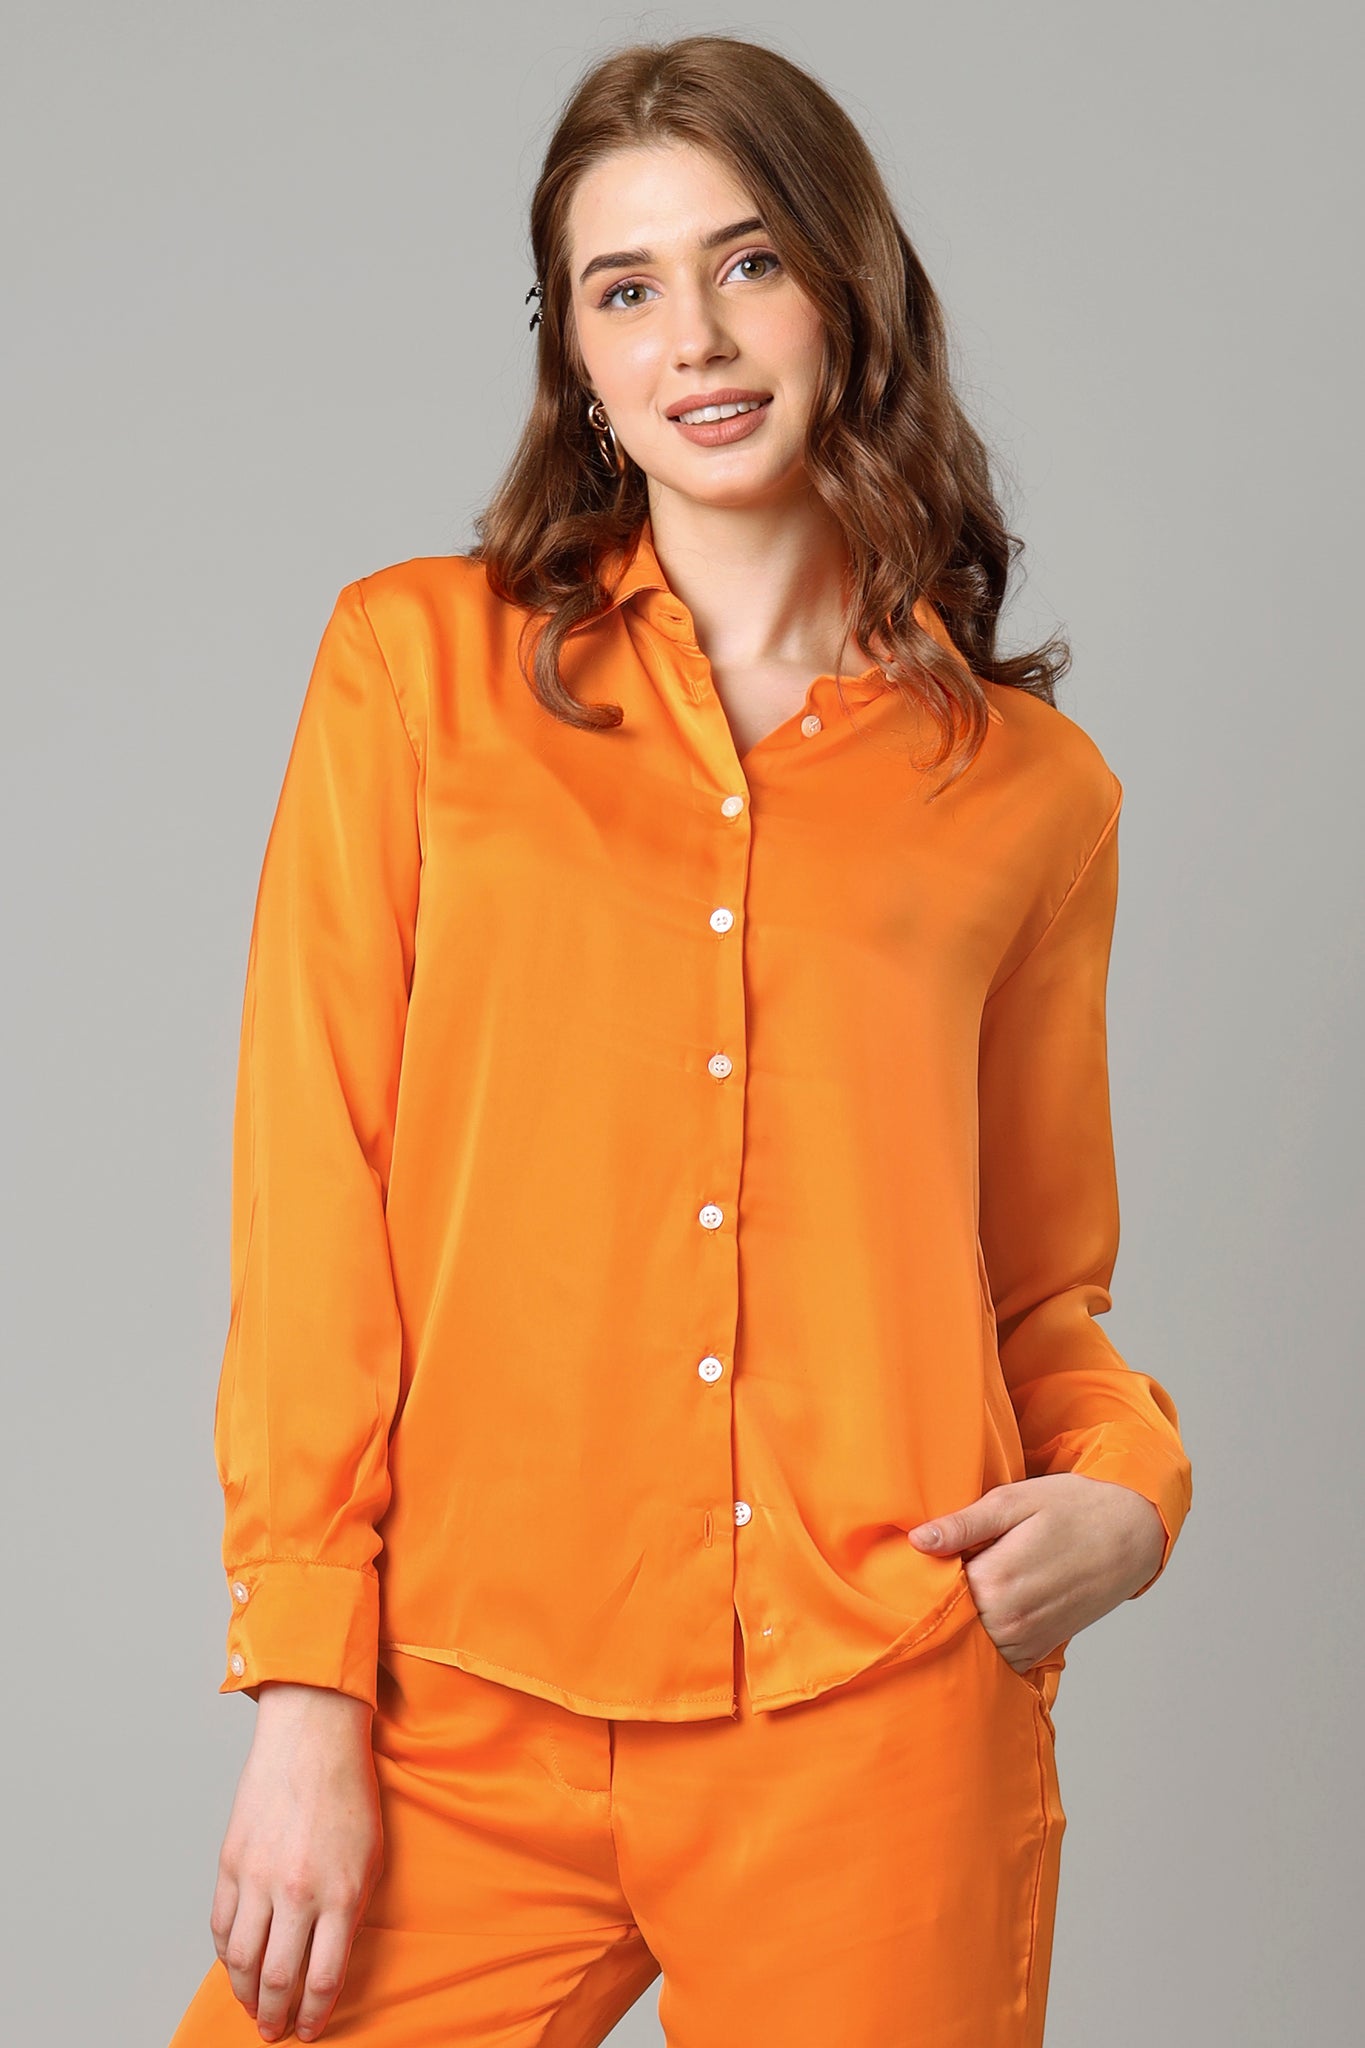 Sunset Orange Shirt For Women